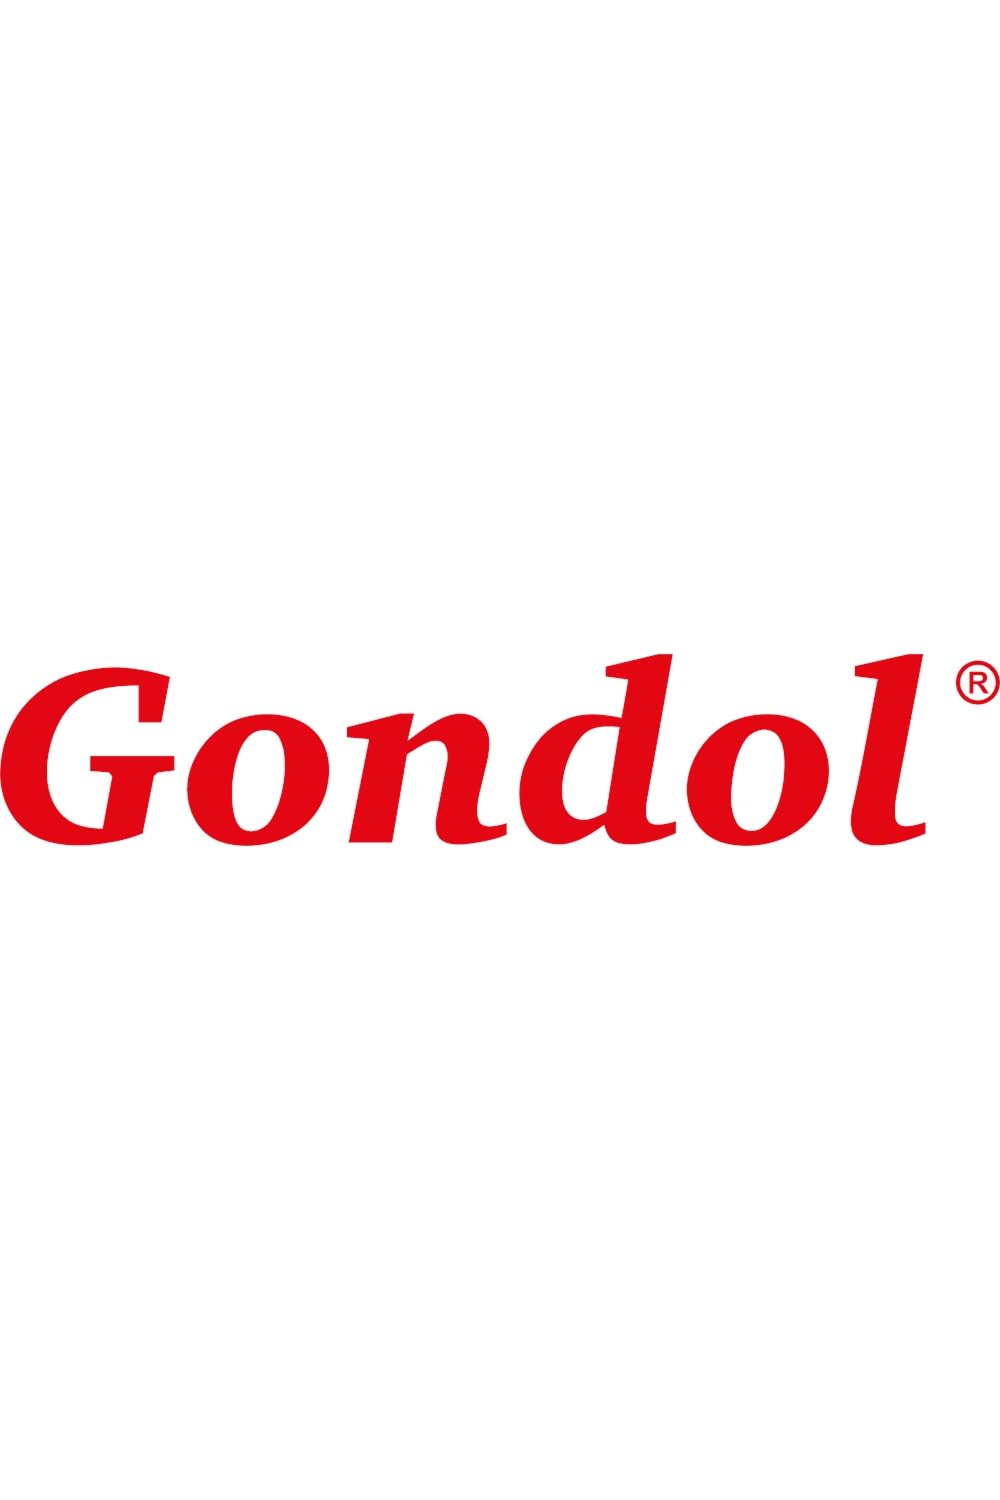 Gondol Croco Detaylı Hakiki Deri Ayakkabı vdt.018- Lacivert Croco - 40